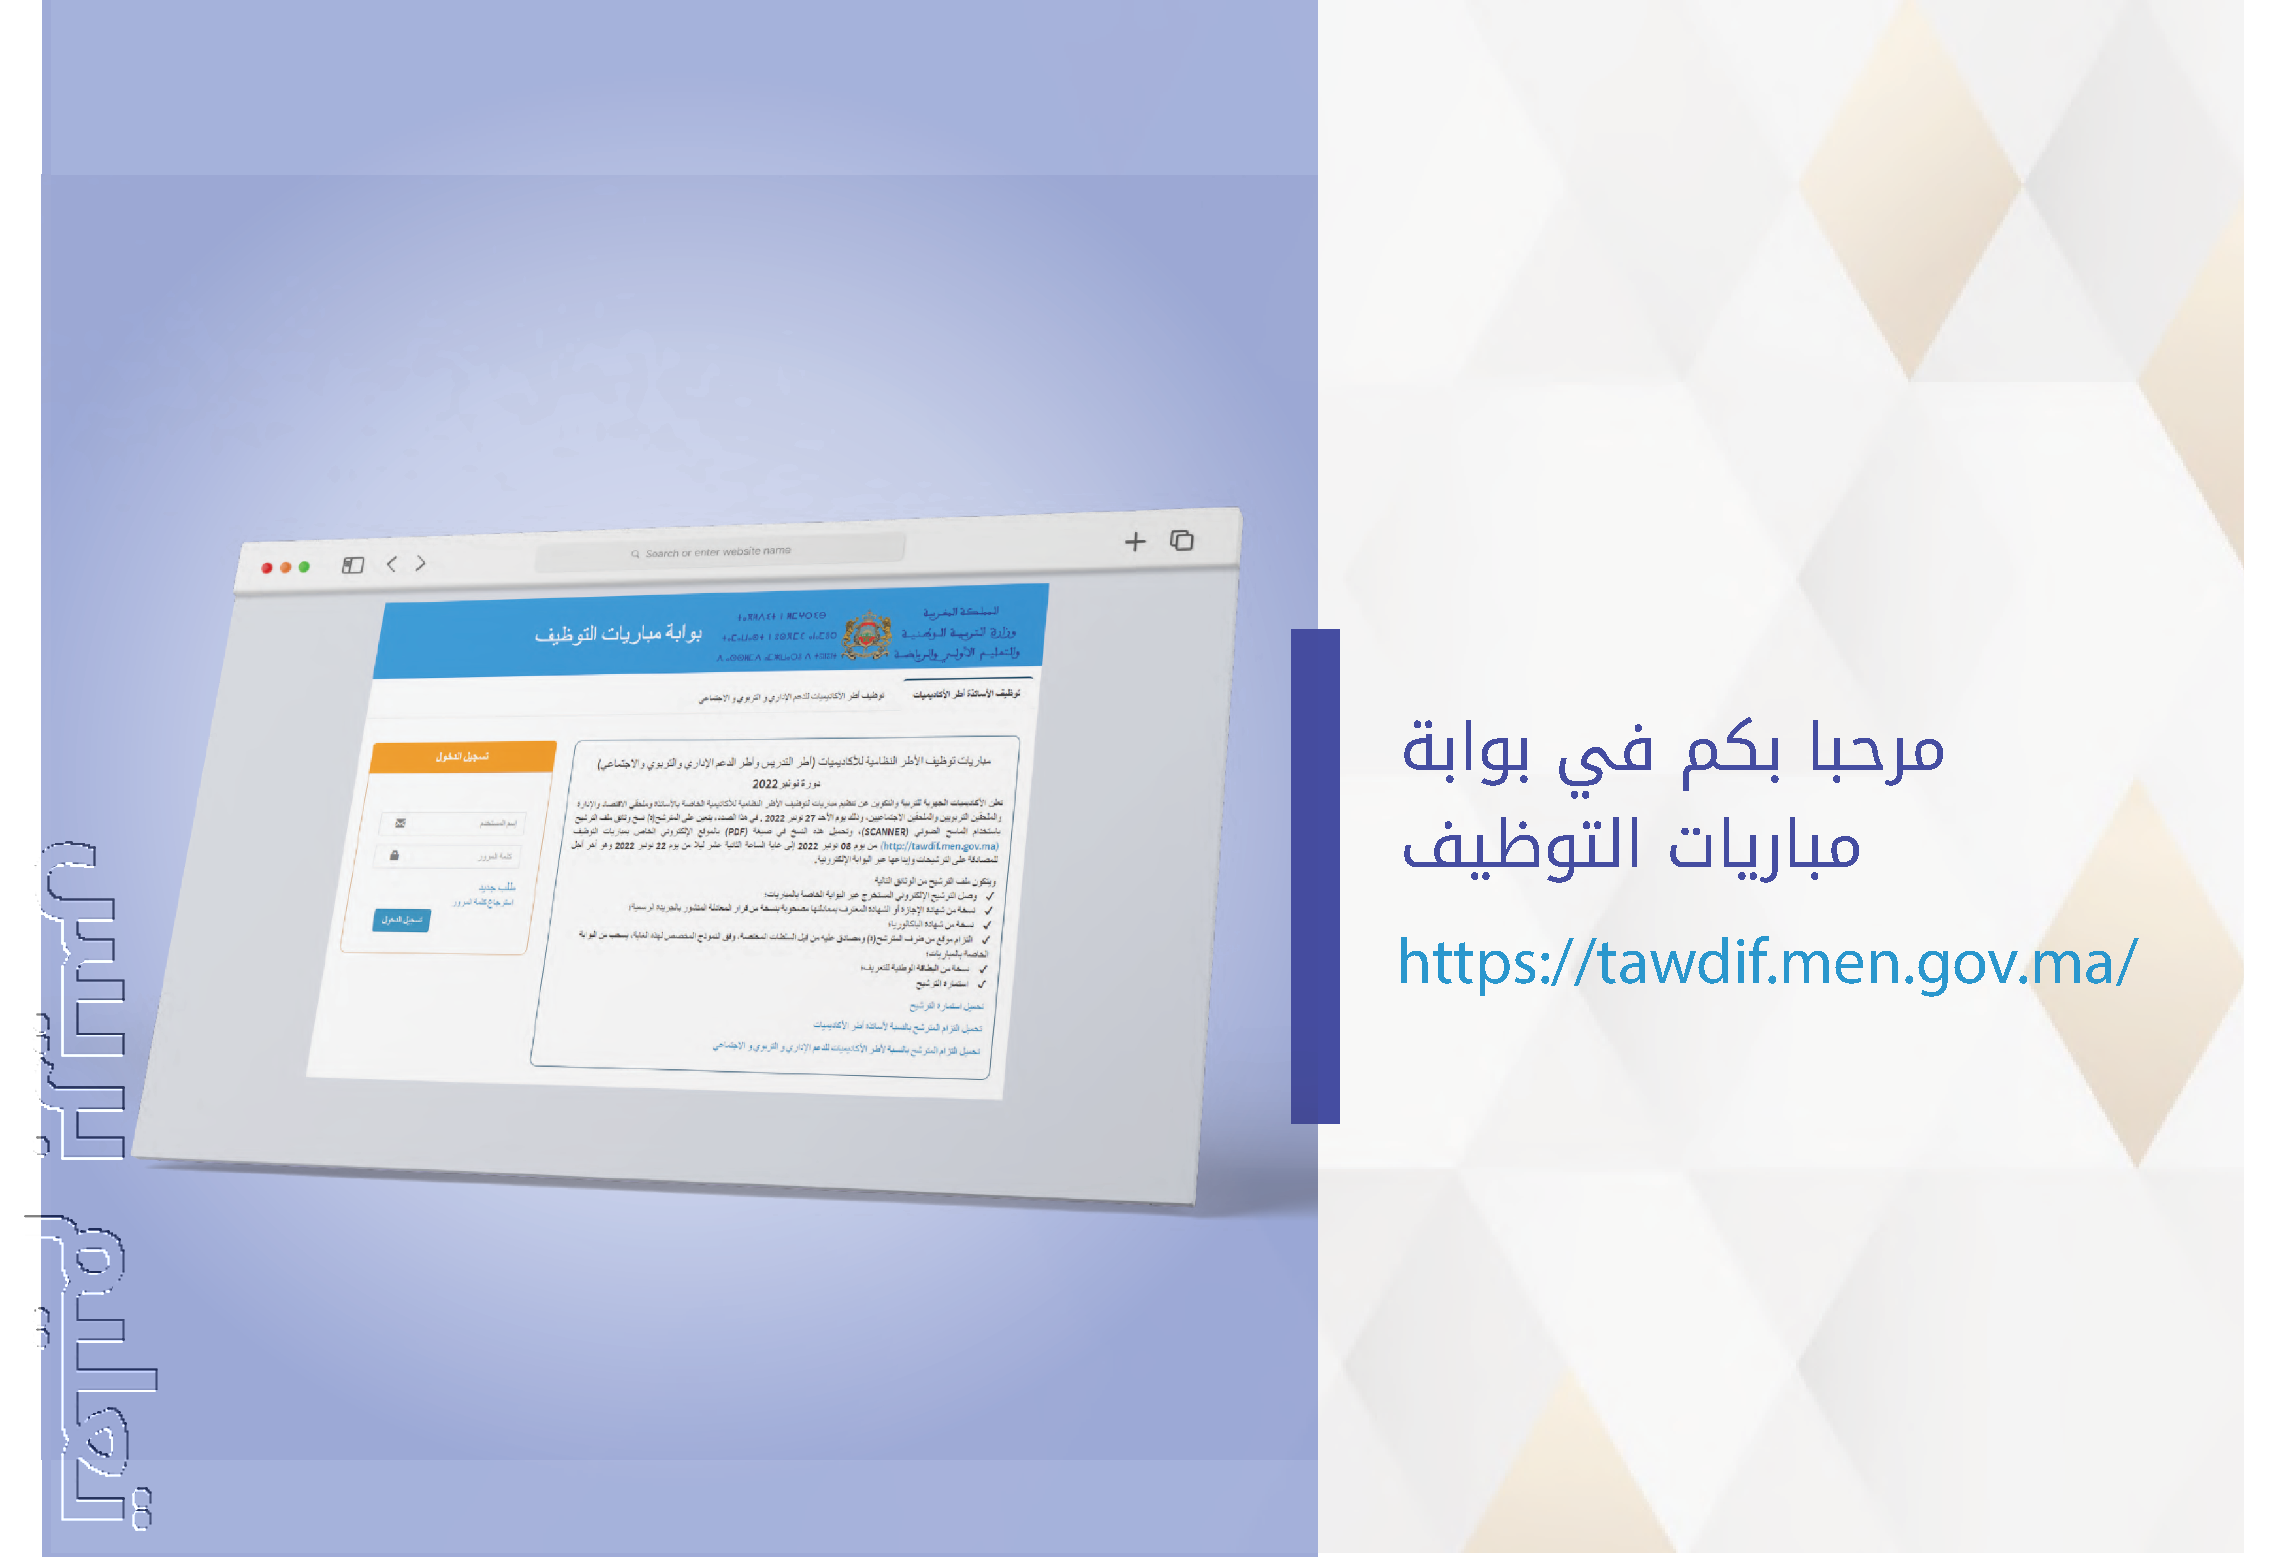 دليل الترشيح مباراة التعليم Tawdif.men.gov.ma 2023/2022